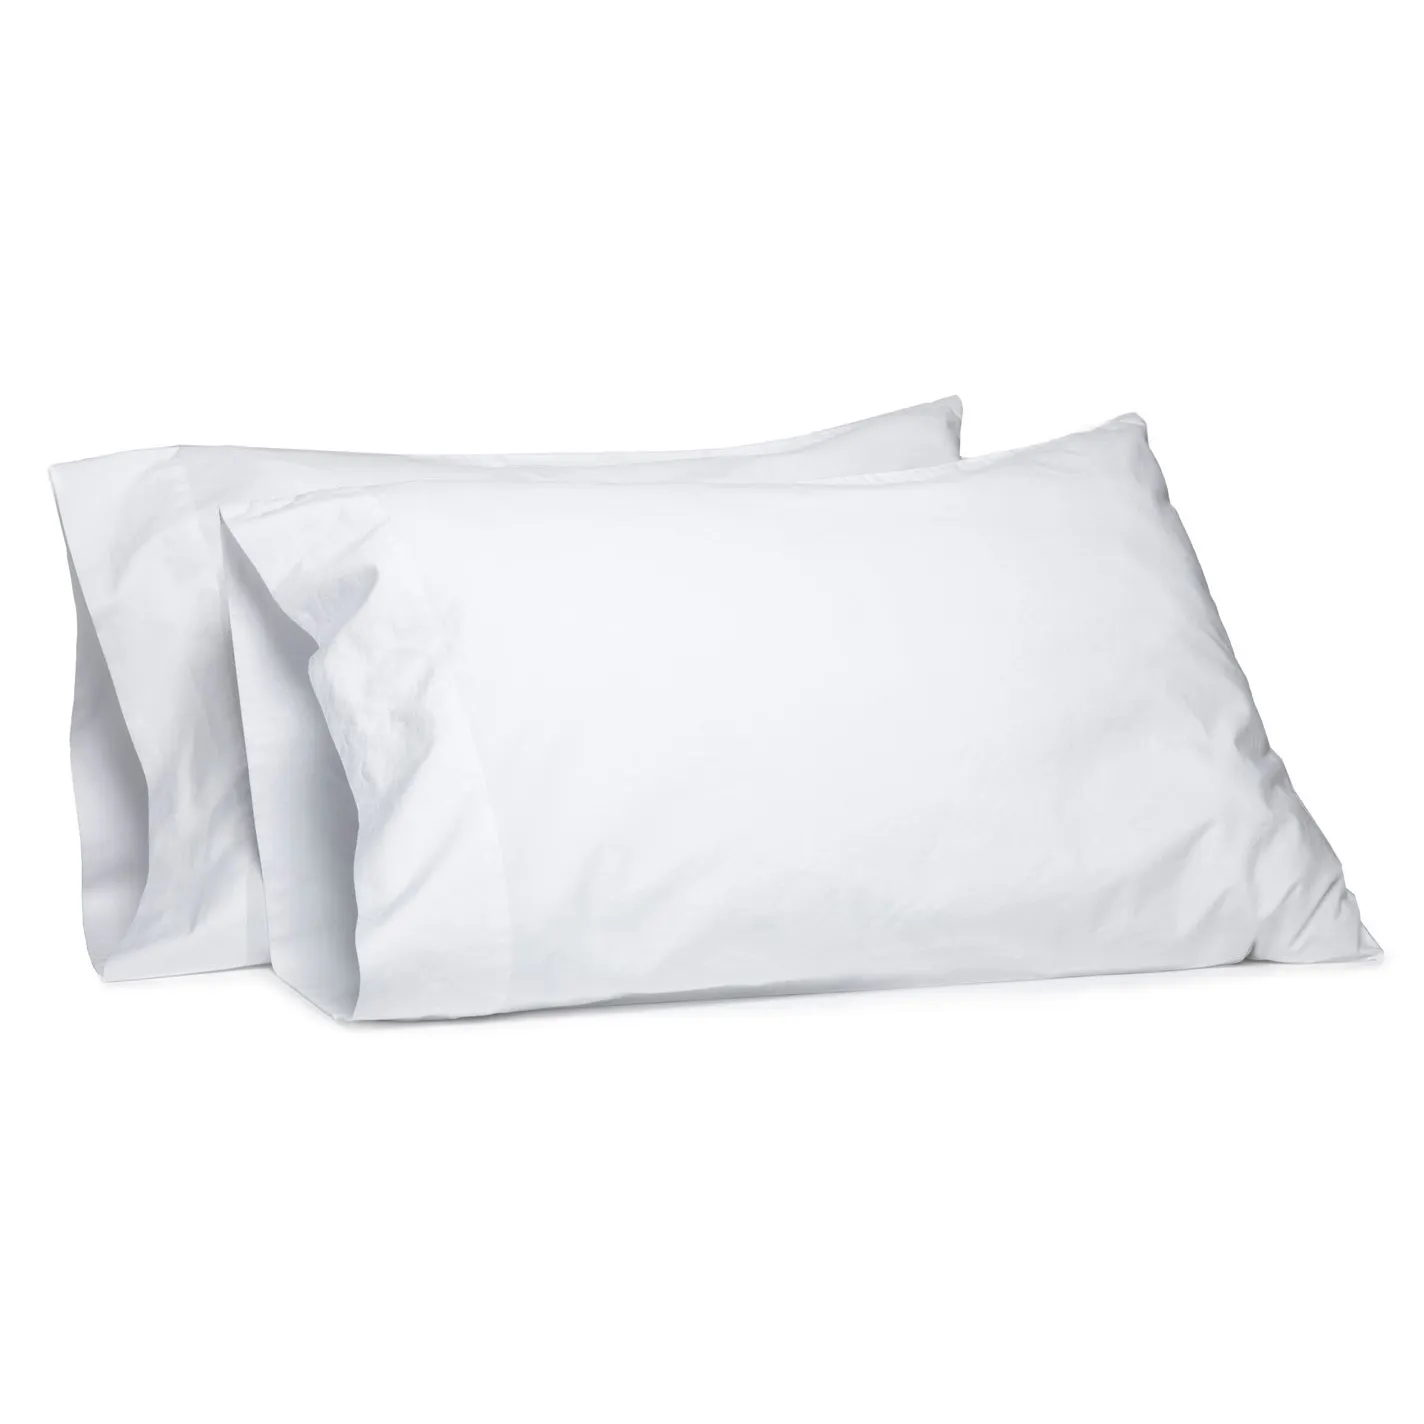 Aziz zafer fabrika fiyat 200tc pamuklu kumaş beyaz otel tarzı yastık yastık kılıfı kapakları